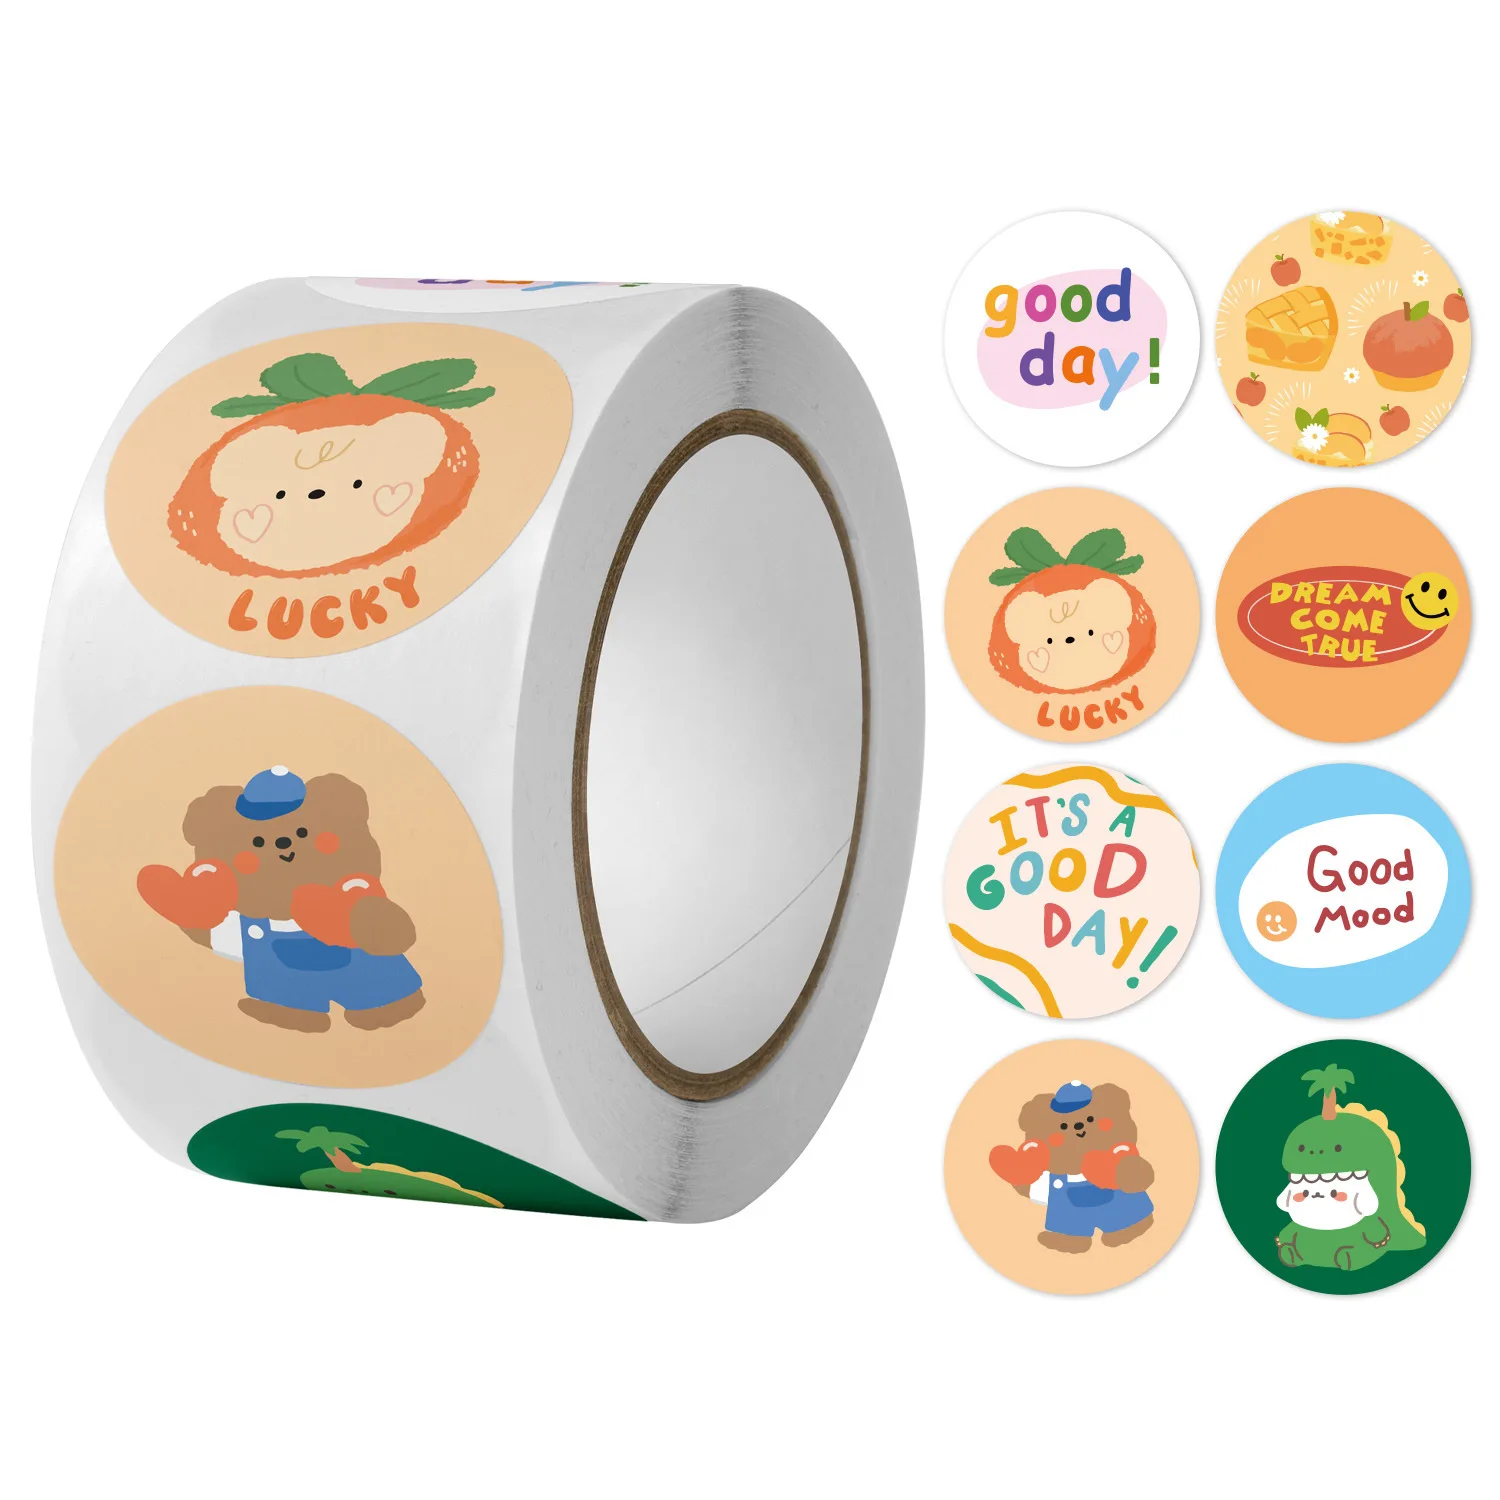 

500pcs New Cute Rabbit Reward Stickers for Kids Cartoon Teacher Encouragement Motivational Sticker for School Student Classroom